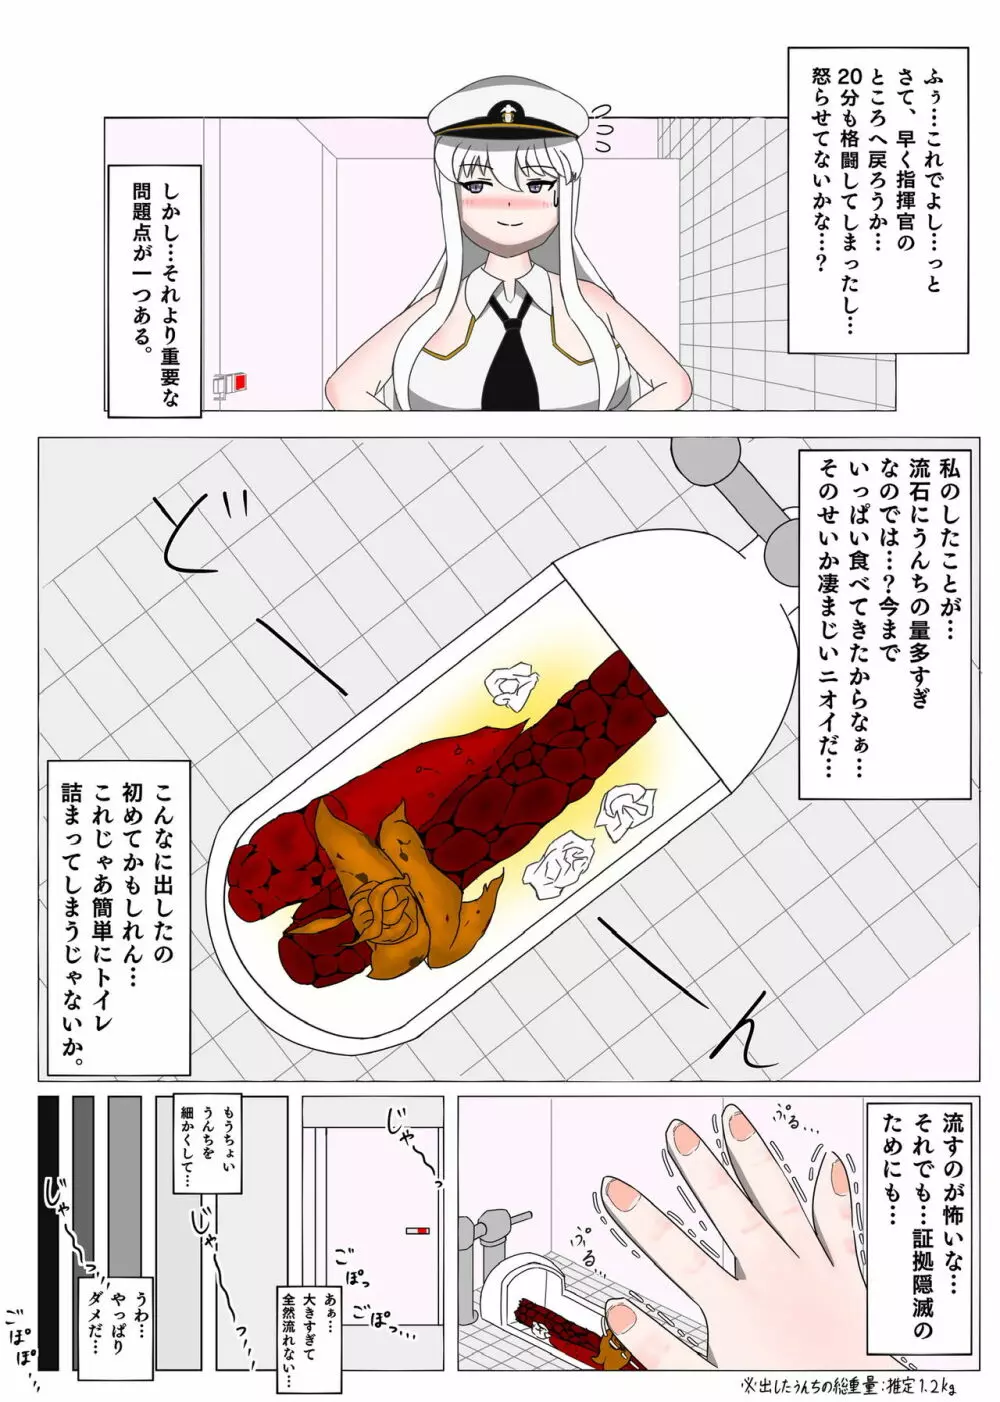 アズレンのエンタープライズが和式トイレで3日分のうんちを出す漫画 14ページ